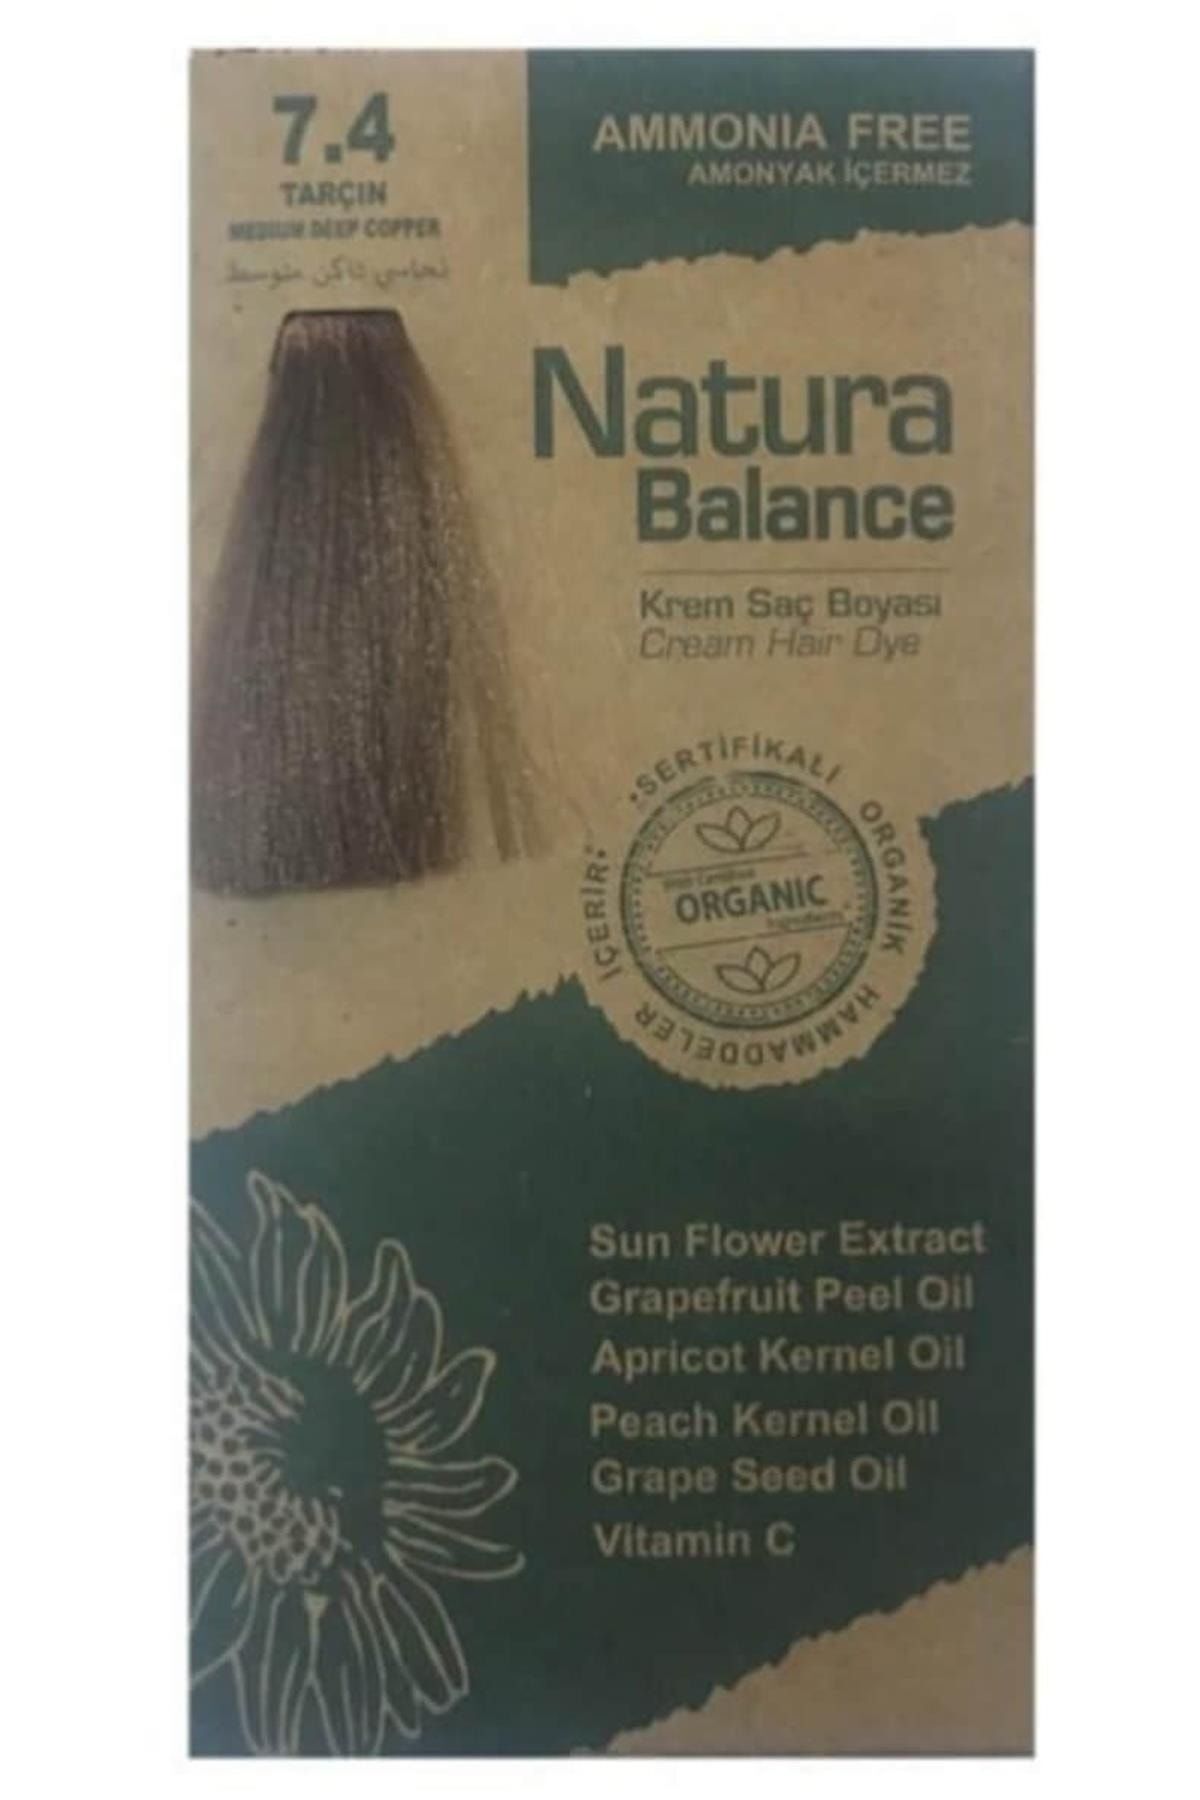 NATURABALANCE Natura Balance Krem Saç Boyası Tarçın 7.4